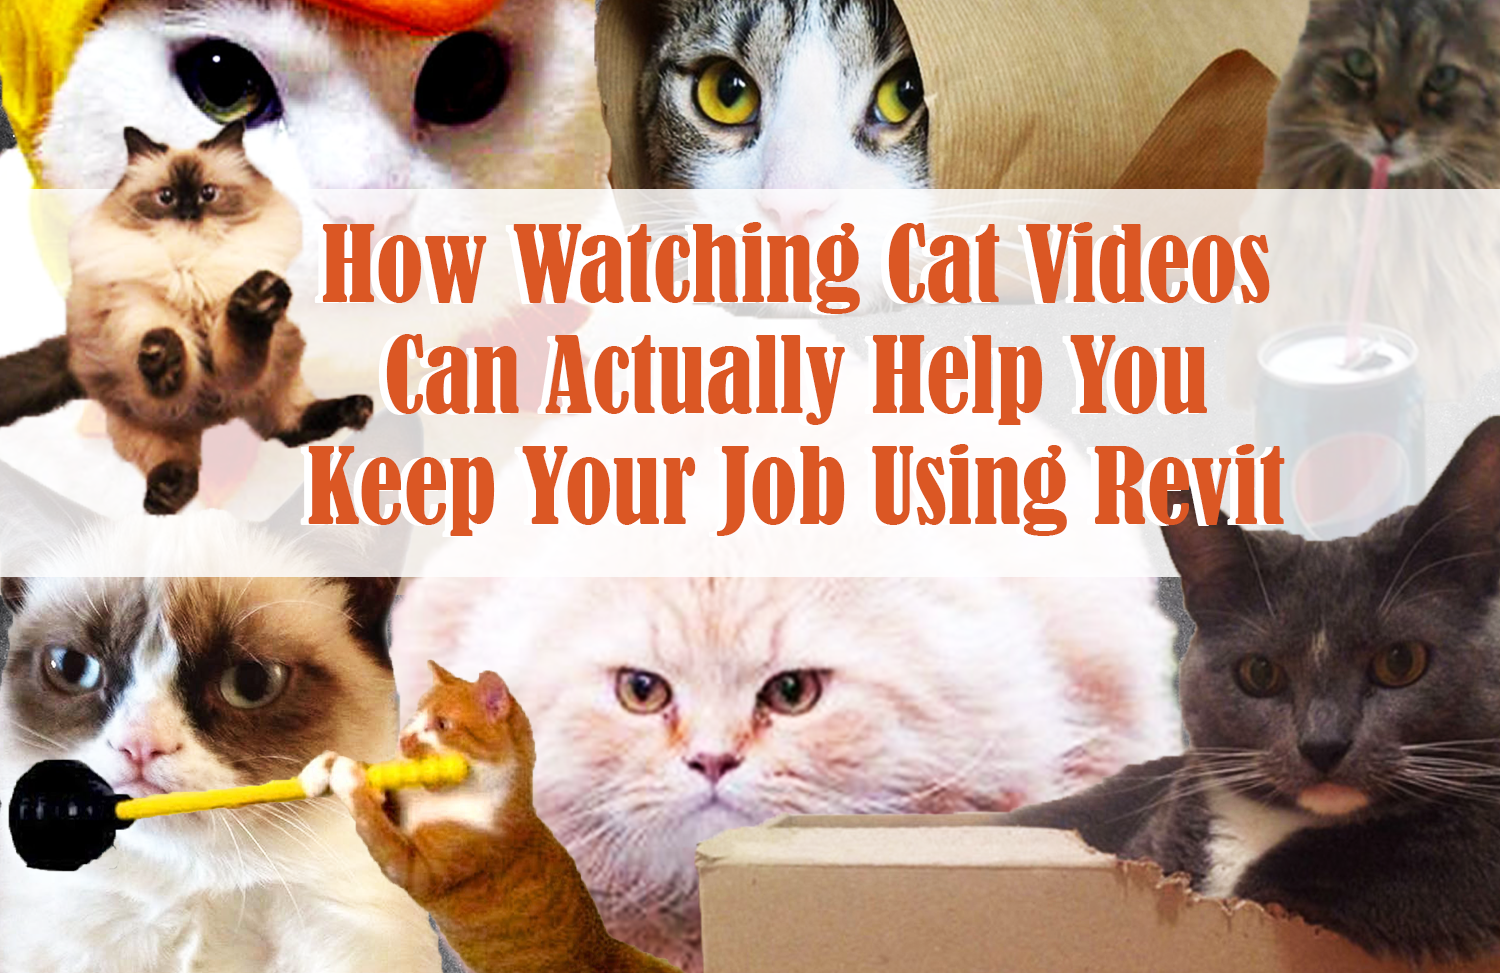 如何使用Revit保住你的工作(通过观察猫的视频)